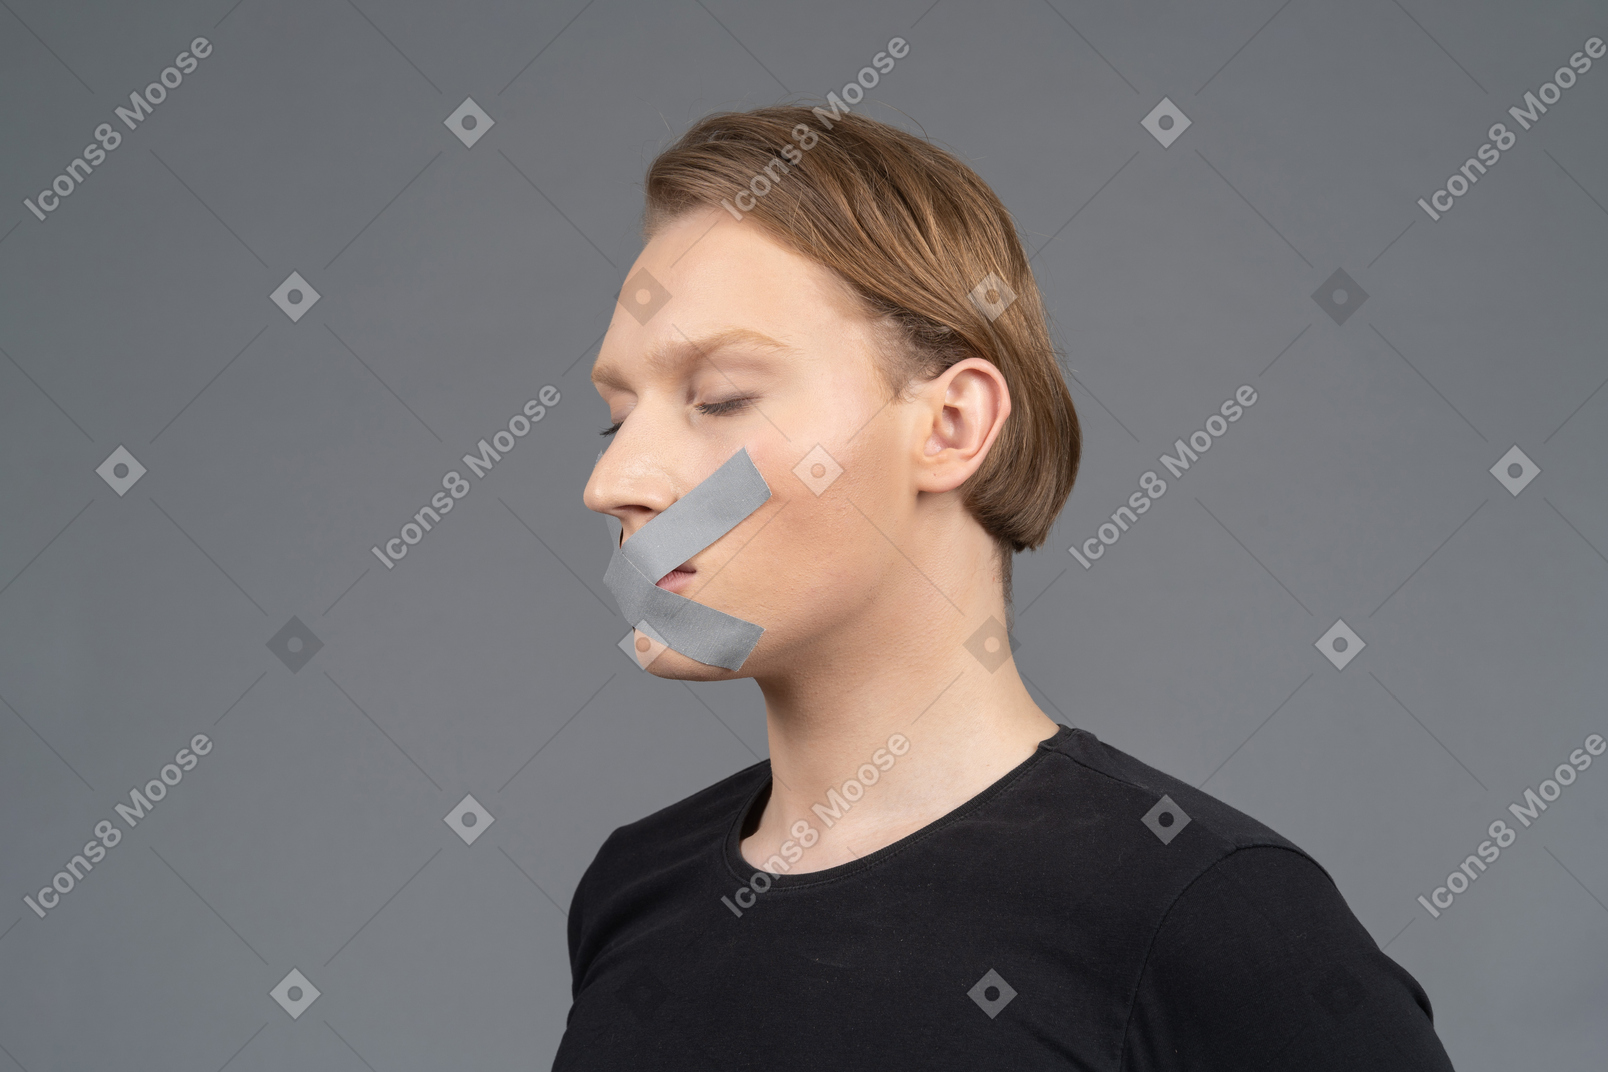 Vista de três quartos da pessoa com fita adesiva na boca e olhos fechados